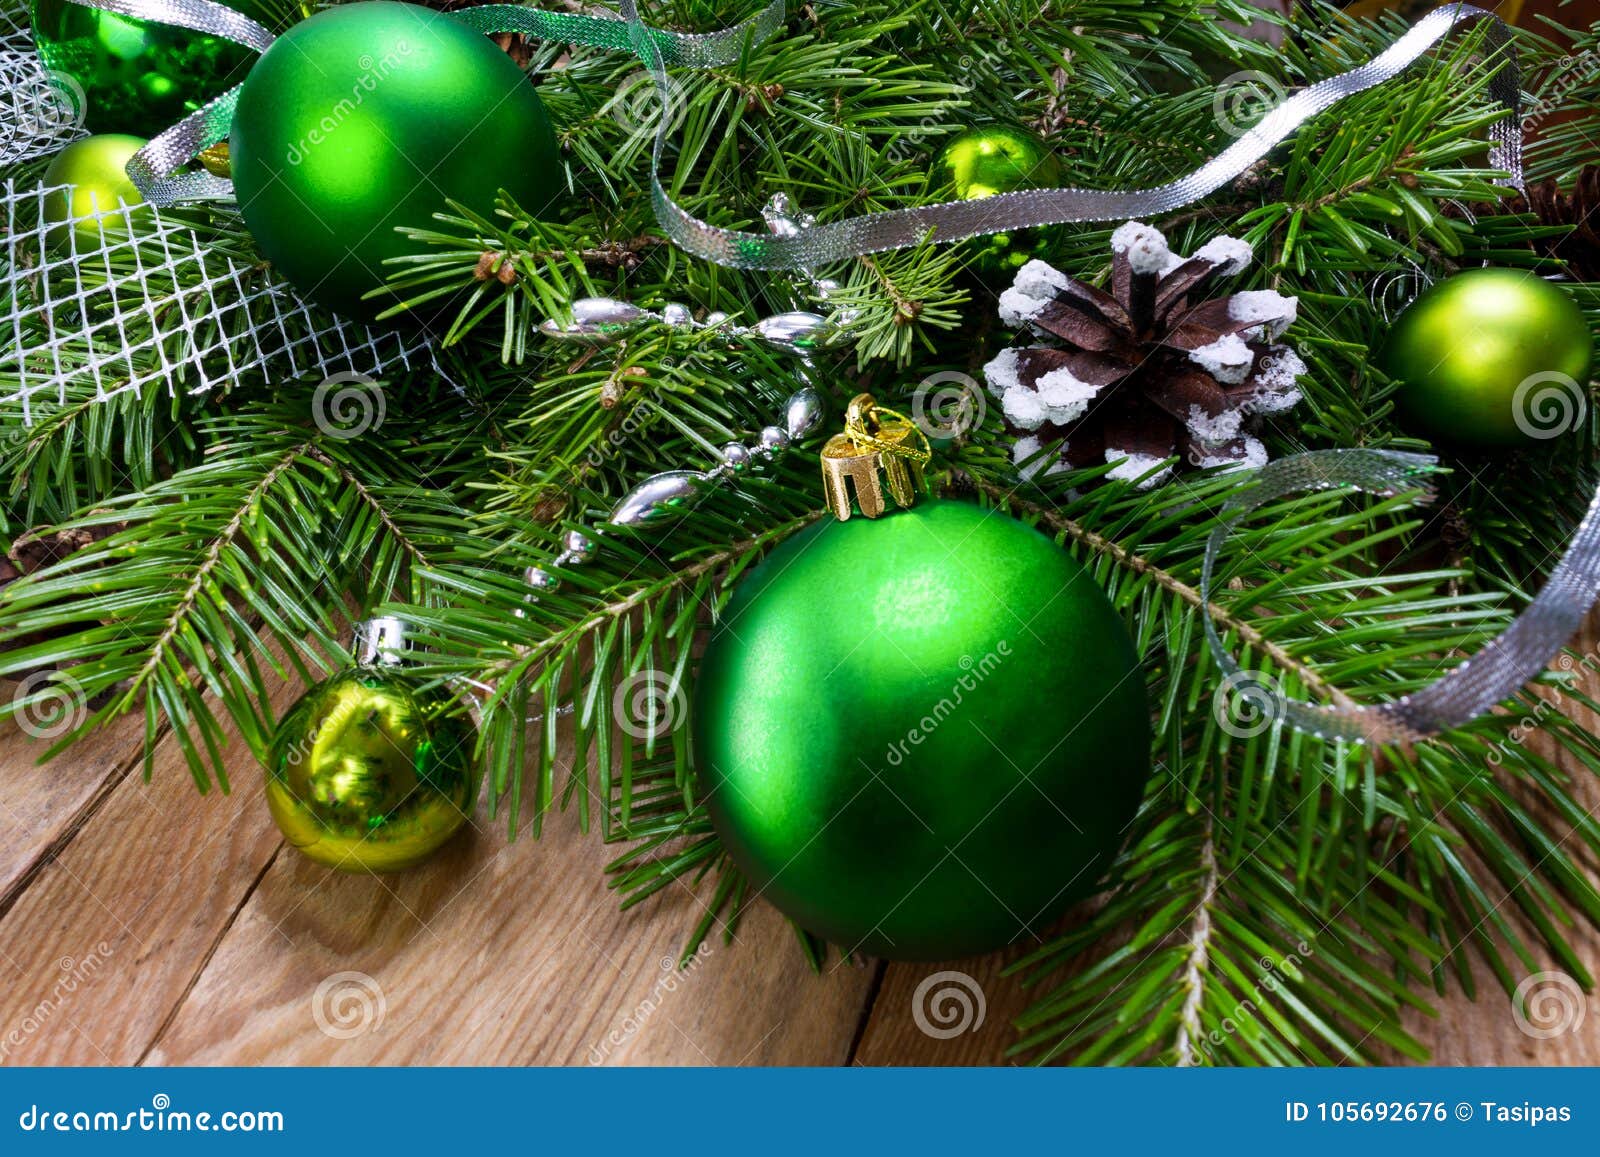 Kroon Van Het Kerstmis De Groene Ornament Op De Houten Achtergrond ...